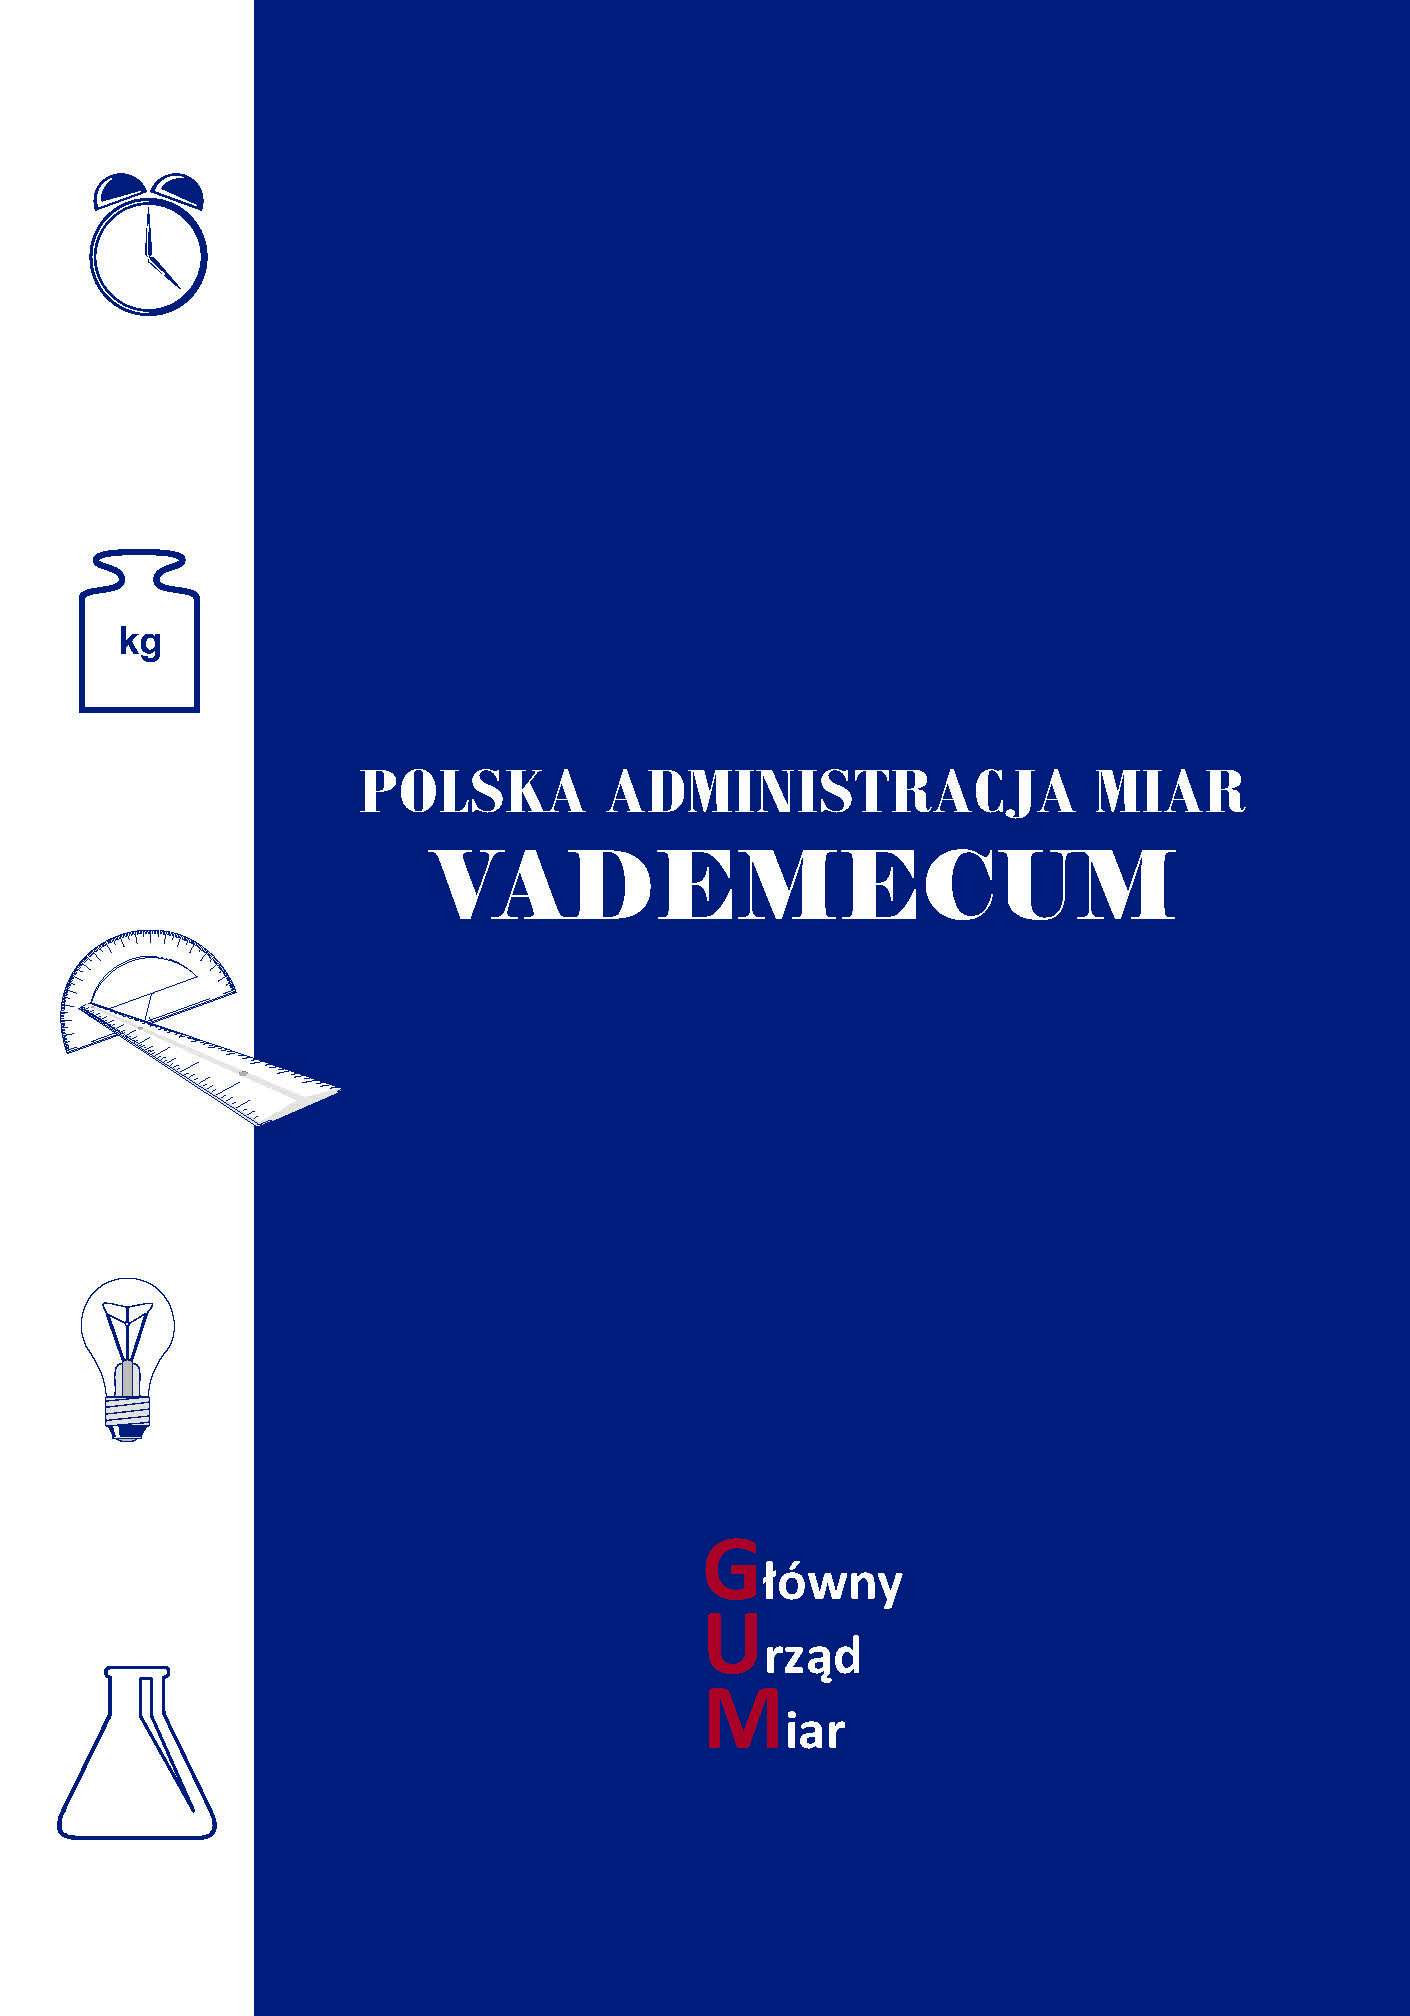 Miniatura okładki Vademecum. Na granatowym tle tytuł, na dole napis GUM, z lewej biały pasek z ikonami symbolizującymi czas, długość, masę, temperaturę i elektryczność. 